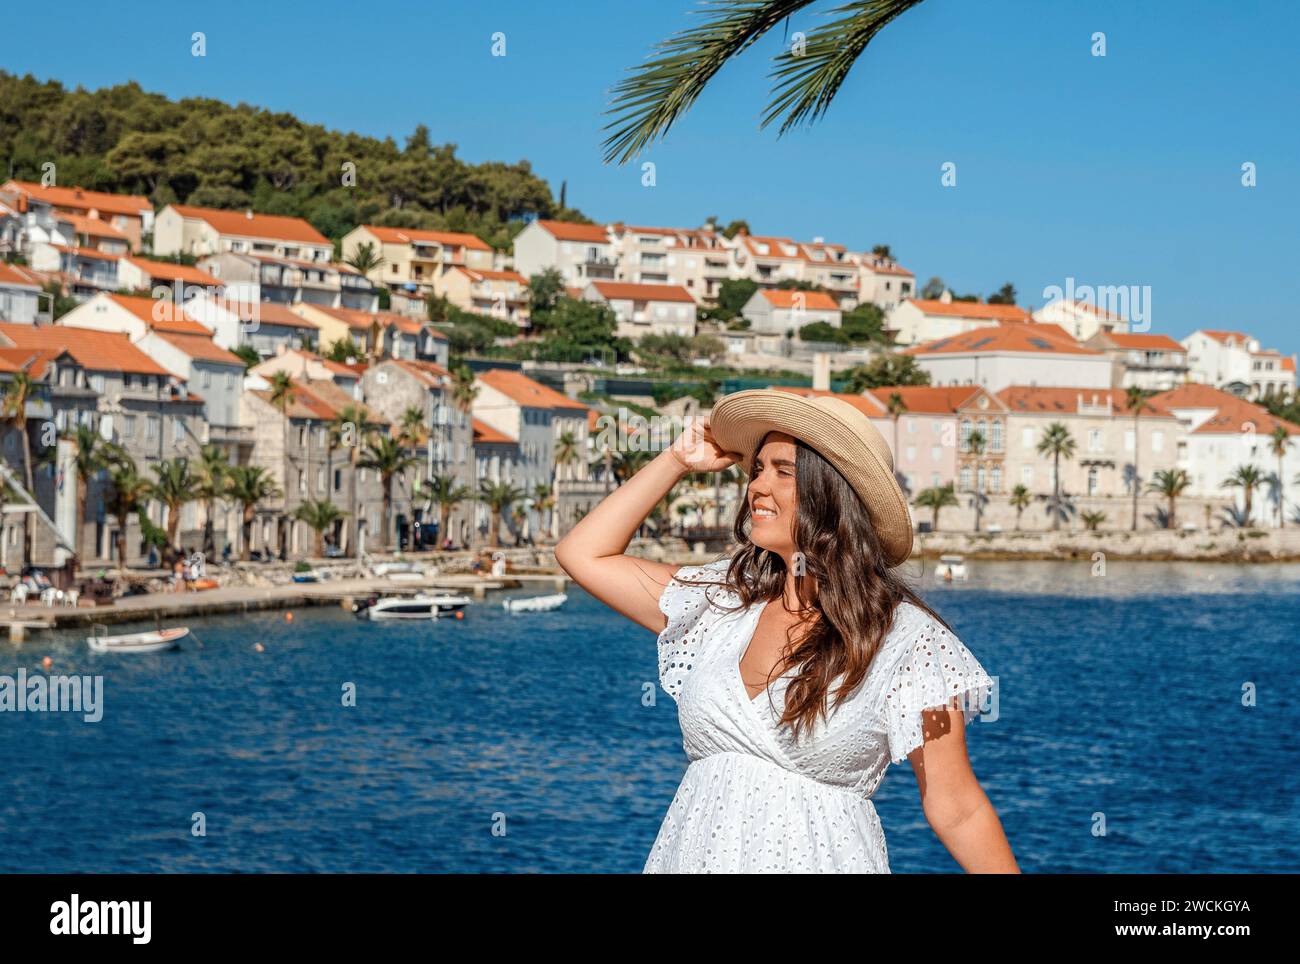 Una donna elegante si erge graziosamente davanti alle acque tranquille, trasudando una bellezza senza tempo con il suo vestito bianco fluente e l'elegante cappello di paglia Foto Stock